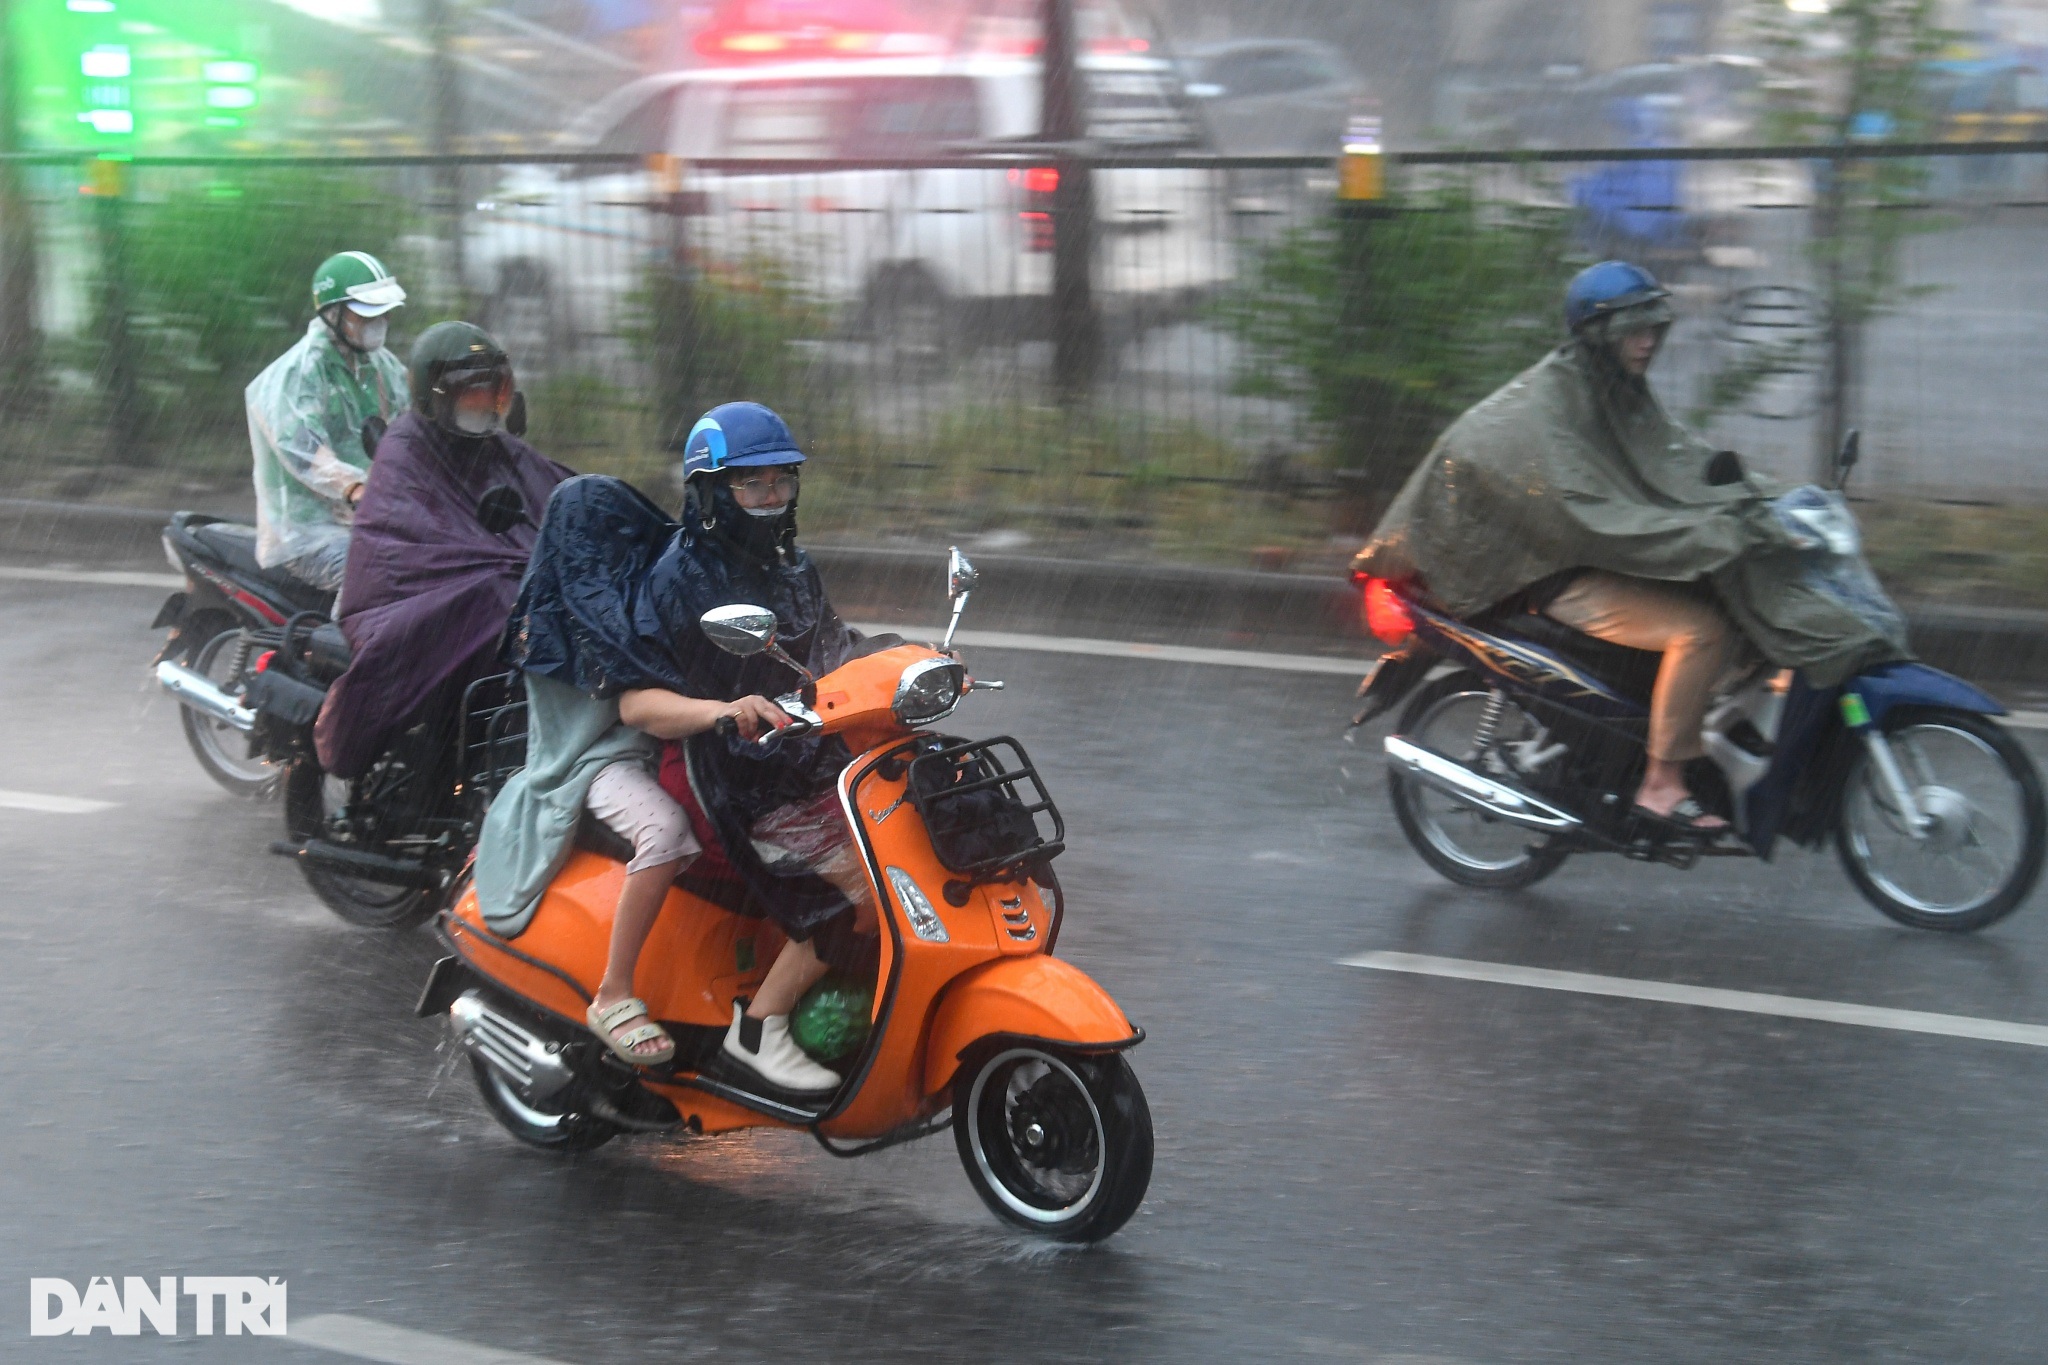 Hà Nội: Cây đổ, mưa ngập nhiều tuyến đường, người dân bì bõm tìm lối đi - 2